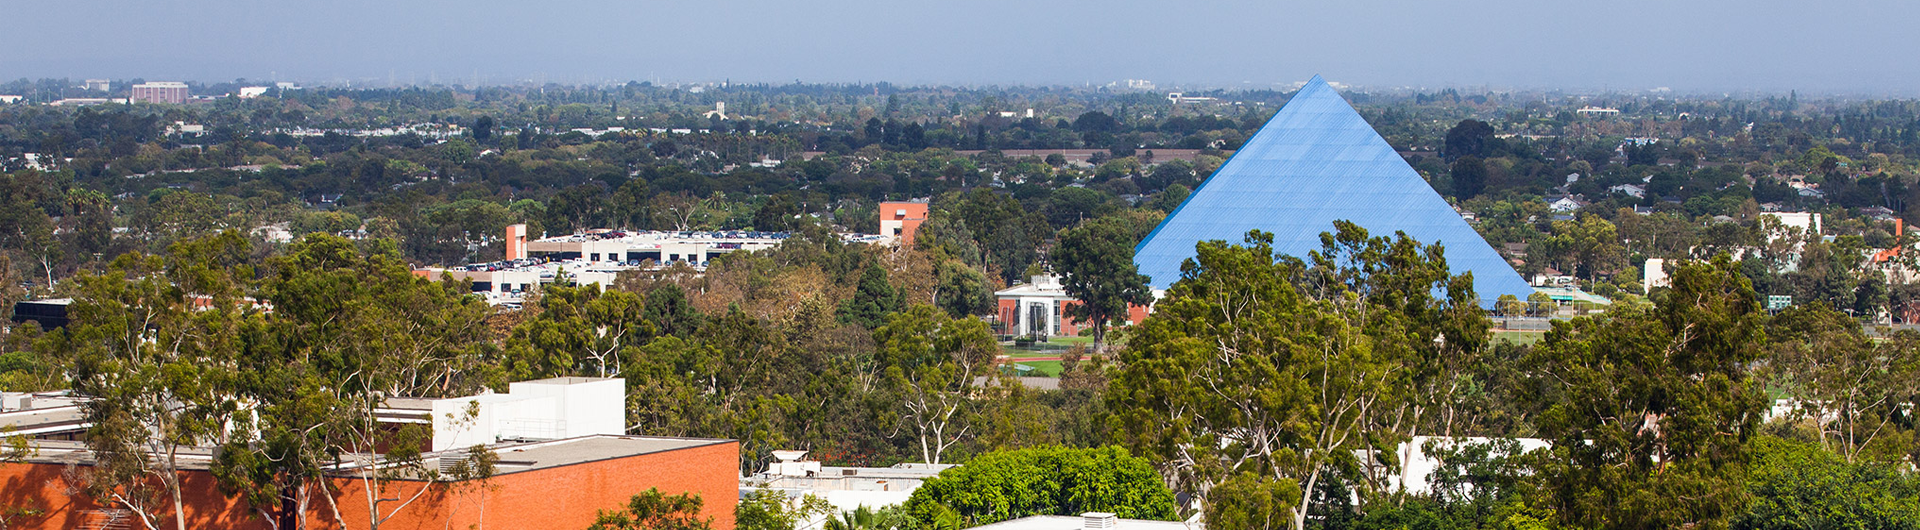 Cal State Long Beach Campus